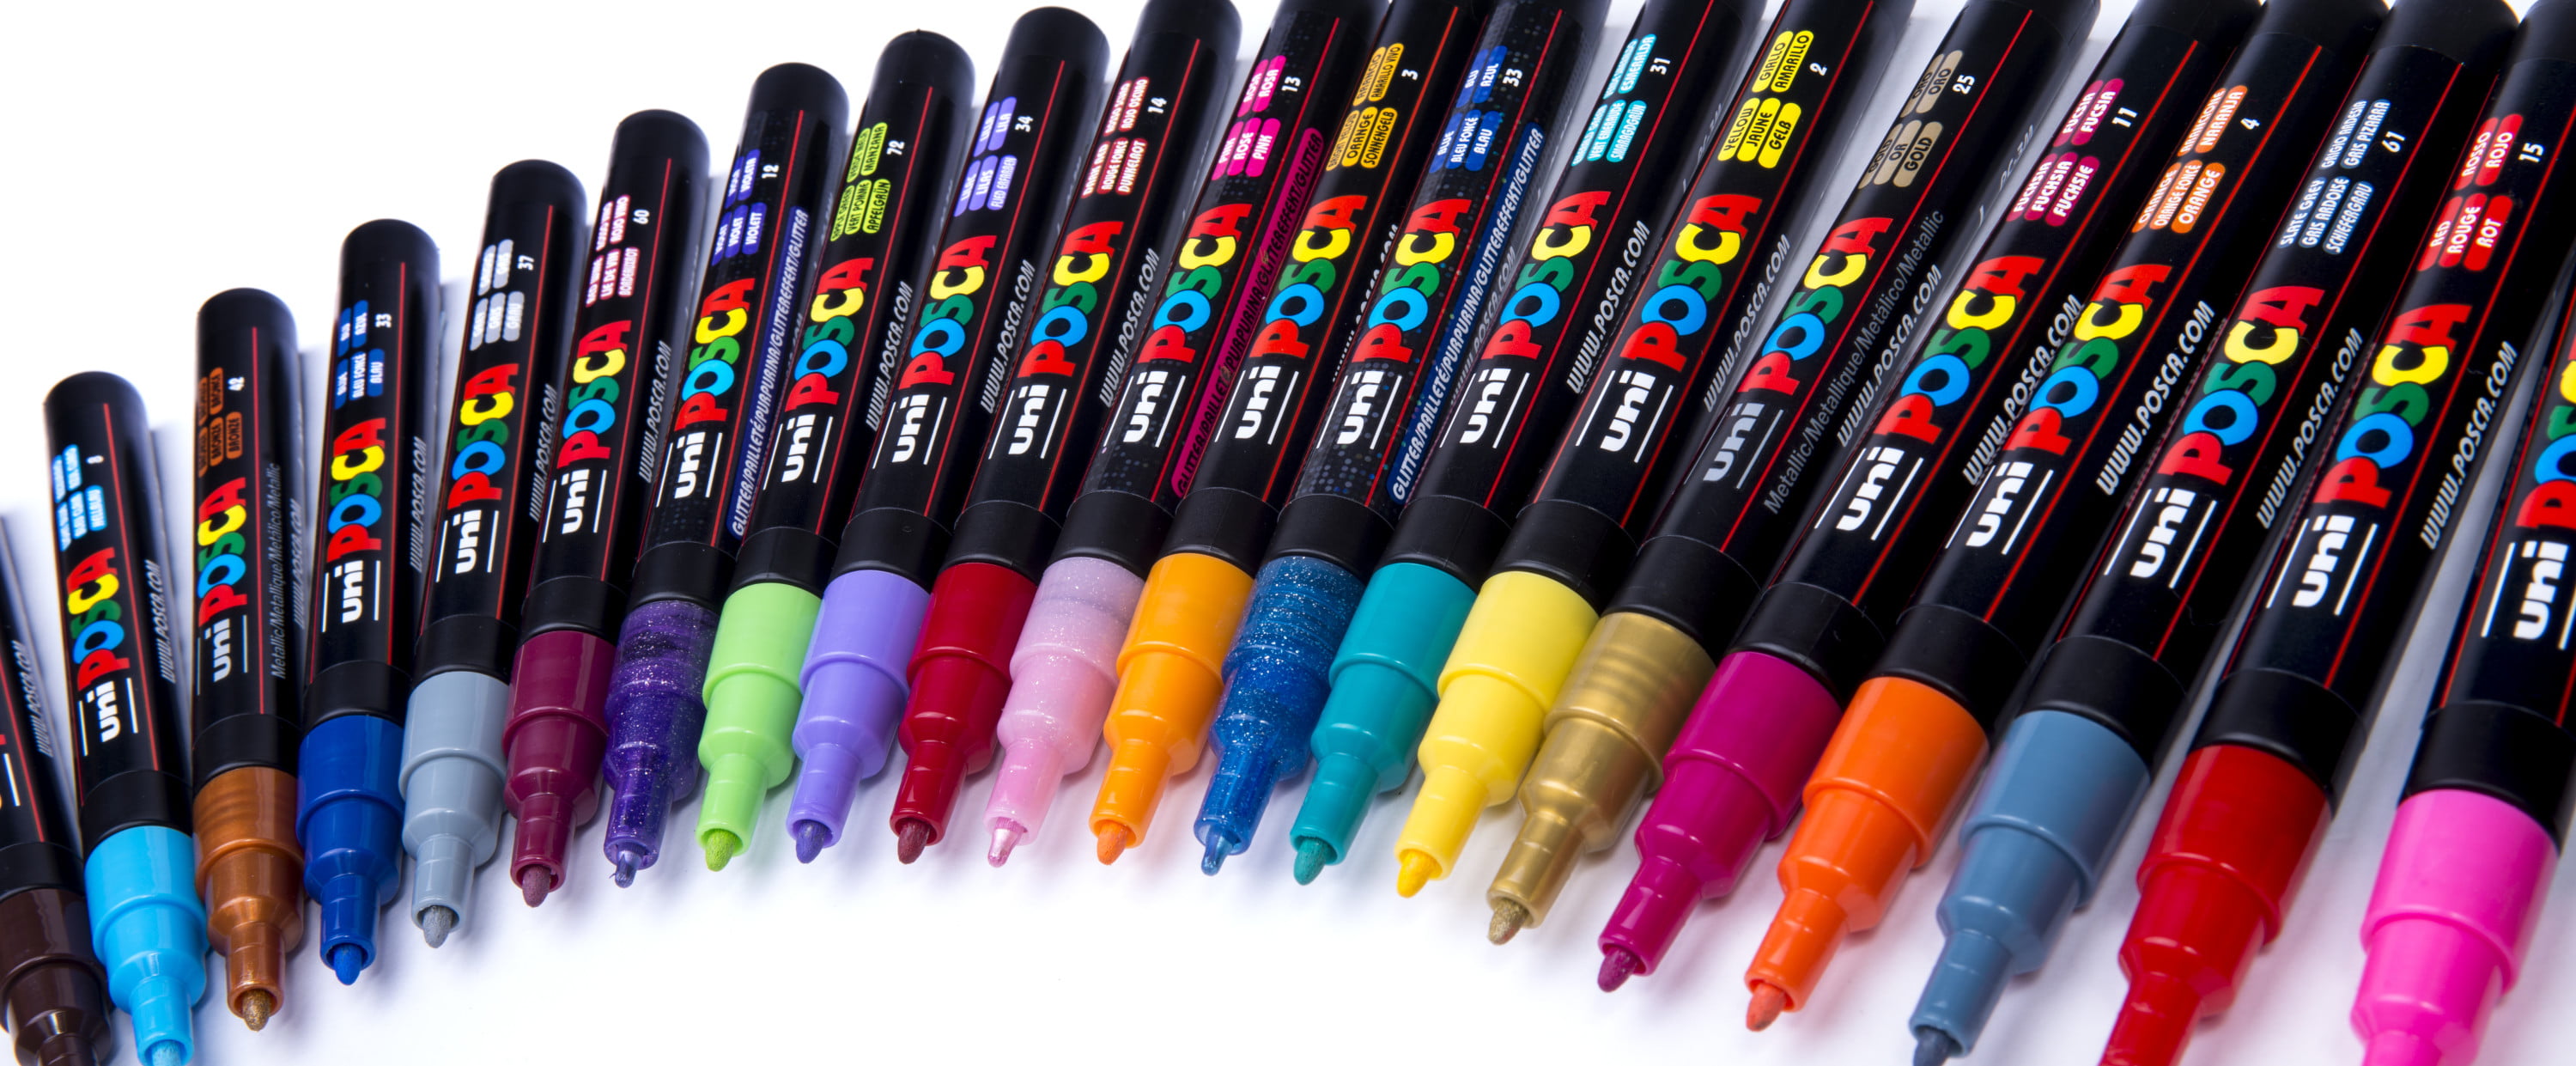 UNI Posca Paint Marker PC-3M - Fine Point - 8 Color Set -  Paint Marker